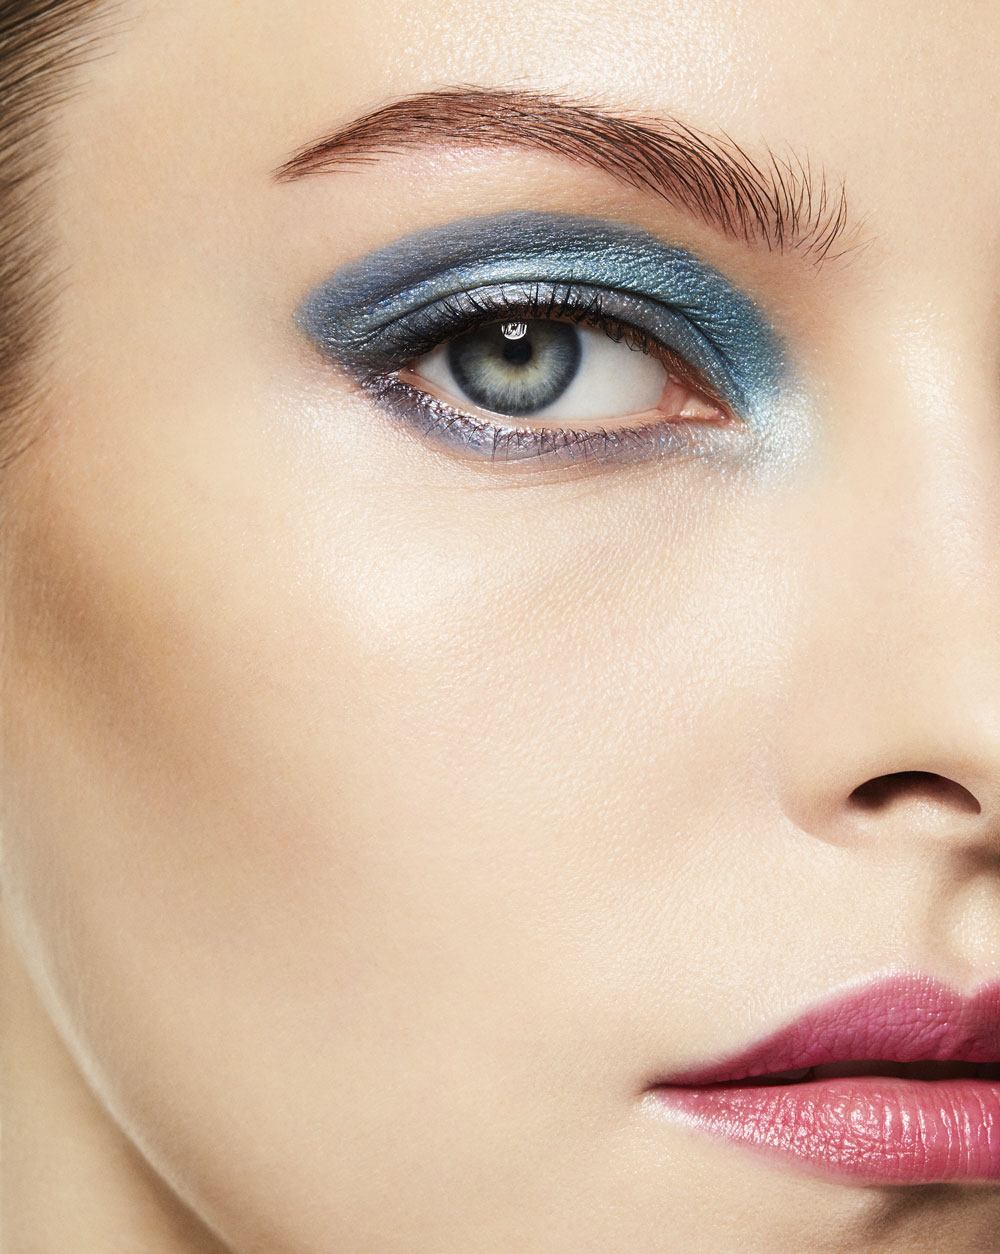 Vogue Italia Beauty editorial for Deborah Cosmetics Milano